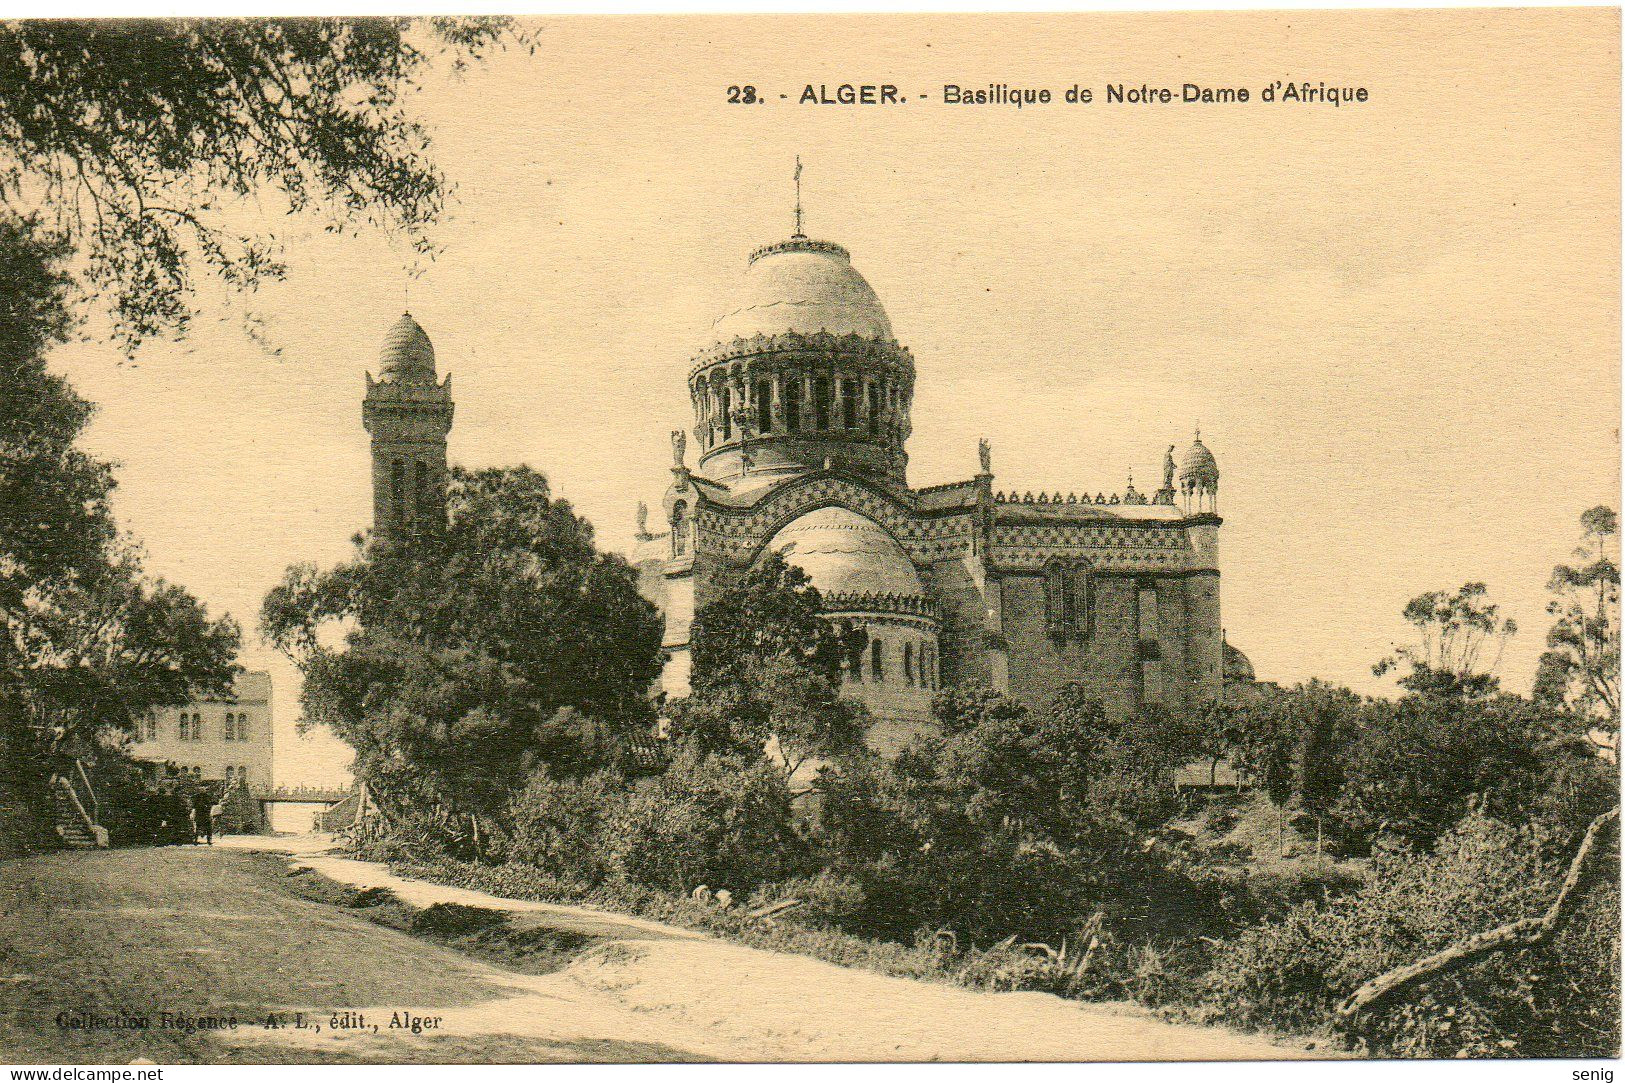 ALGERIE - ALGER - 23 - Basilique Notre Dame D'Afrique - Collection Régence A. L. édit. Alger (Leroux - Alger